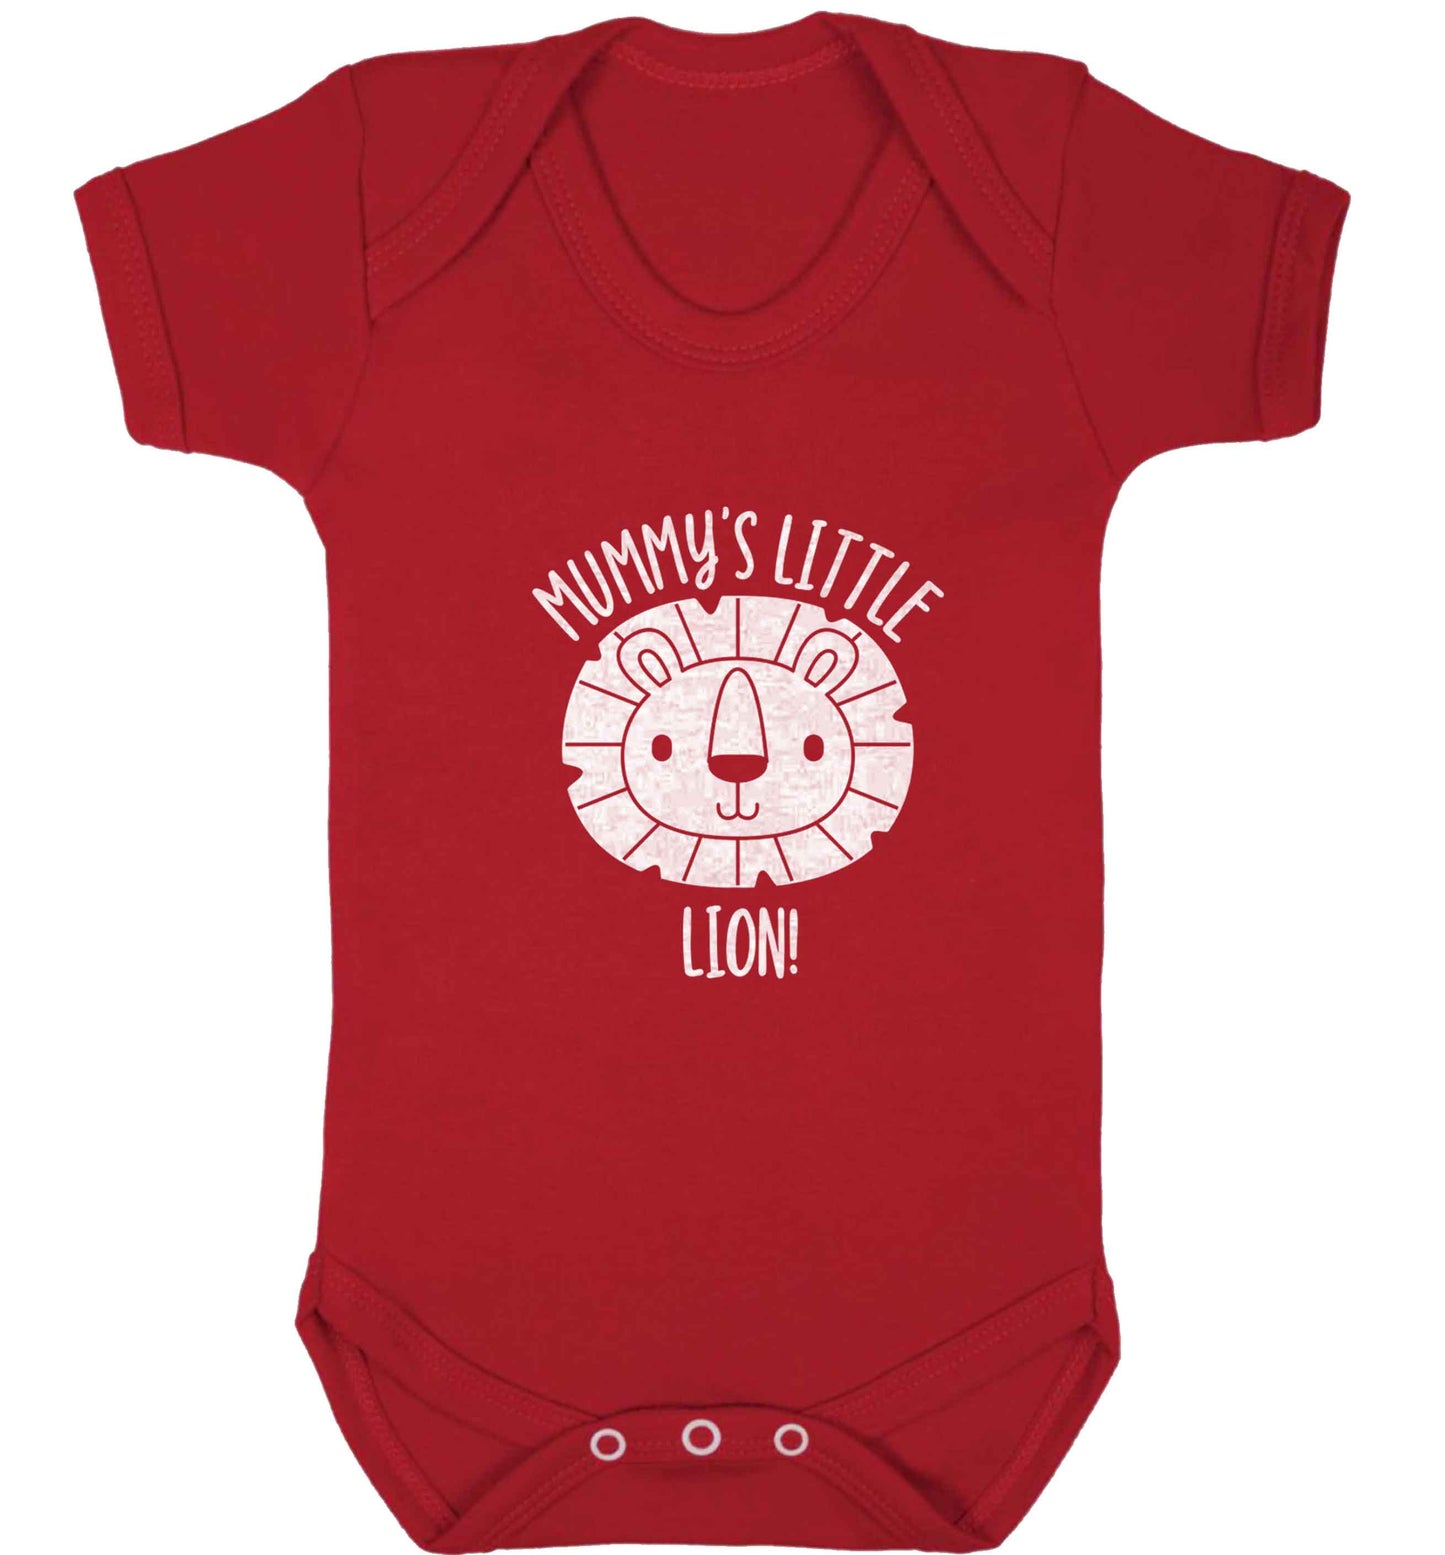 Mummy's little lion baby vest red 18-24 months